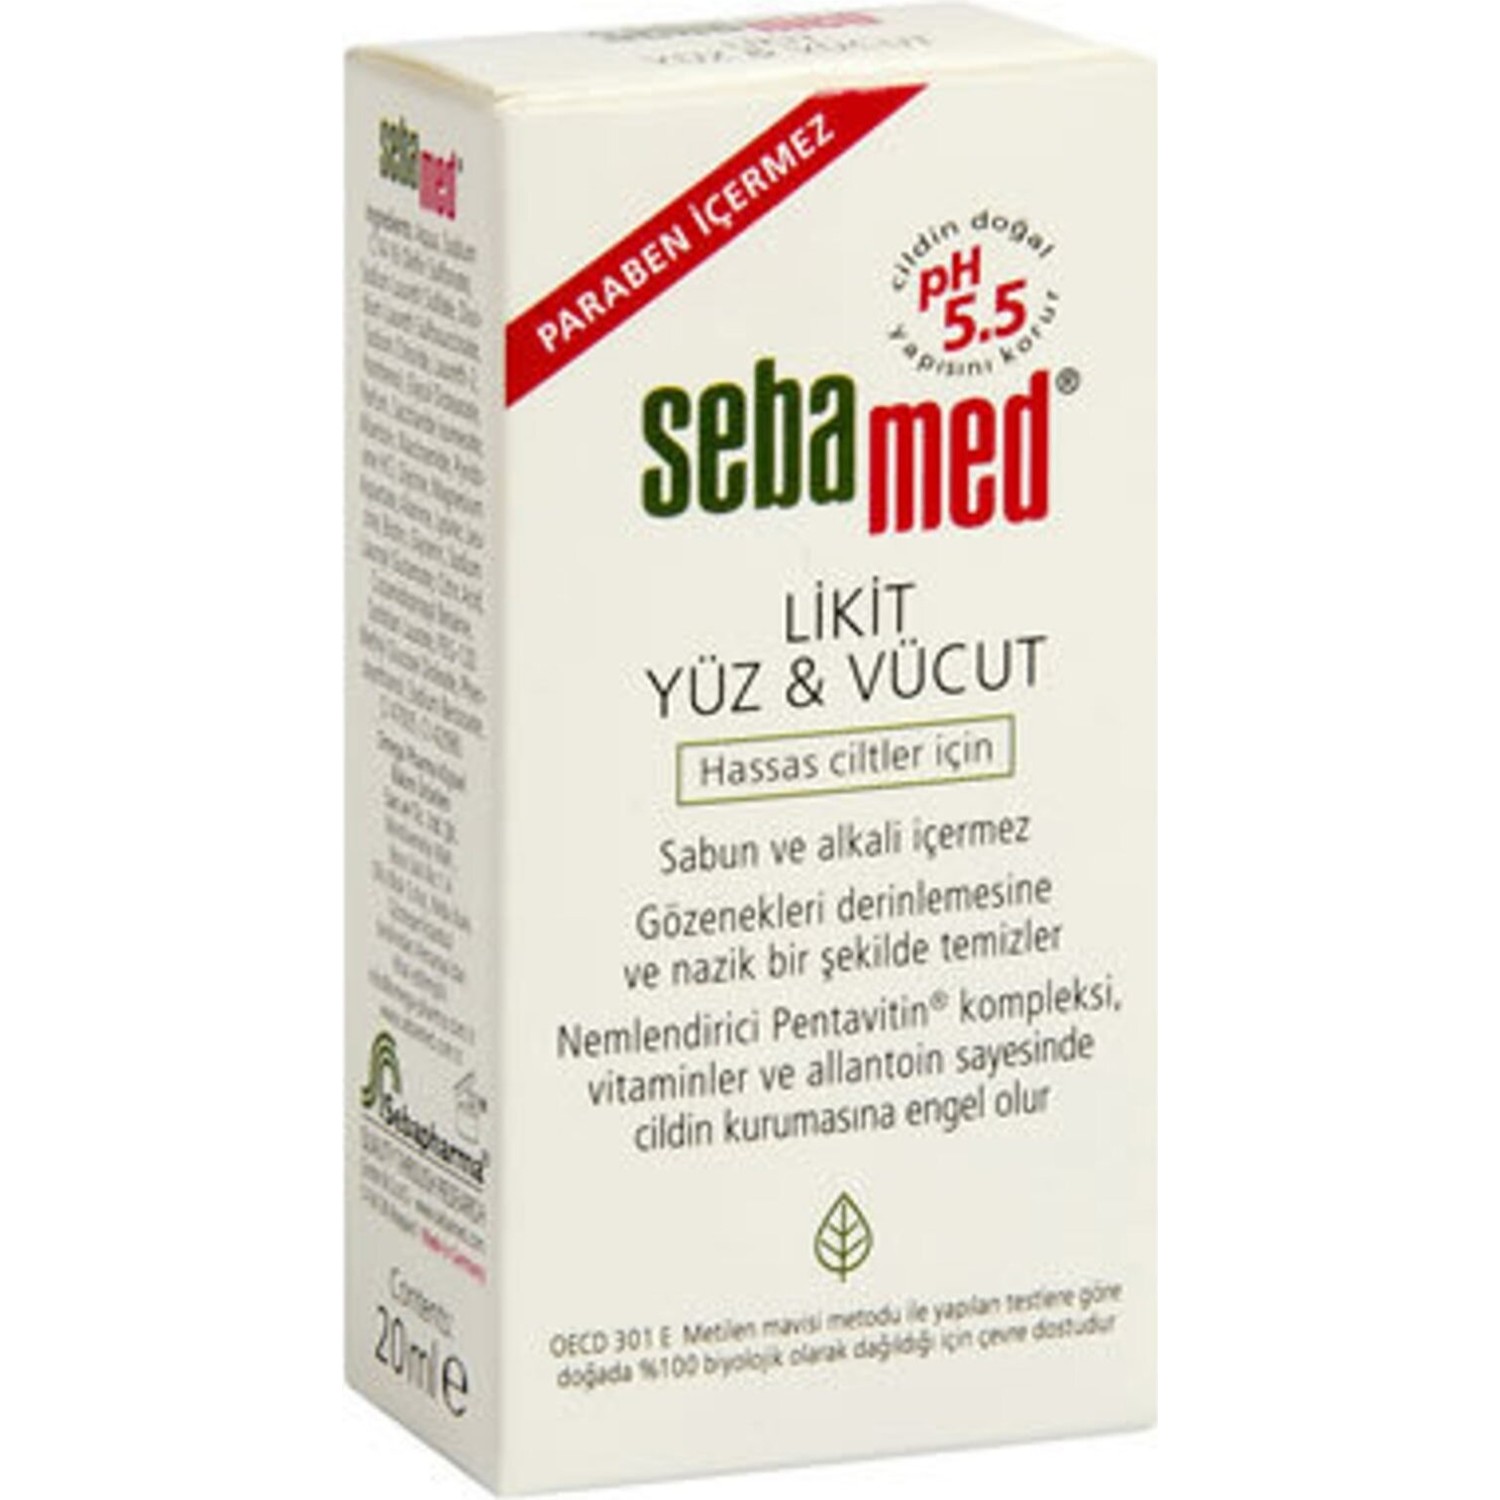 Очищающее средство Sebamed Liquid для лица и тела очищающее средство sebamed intim liquid для интимной гигиены